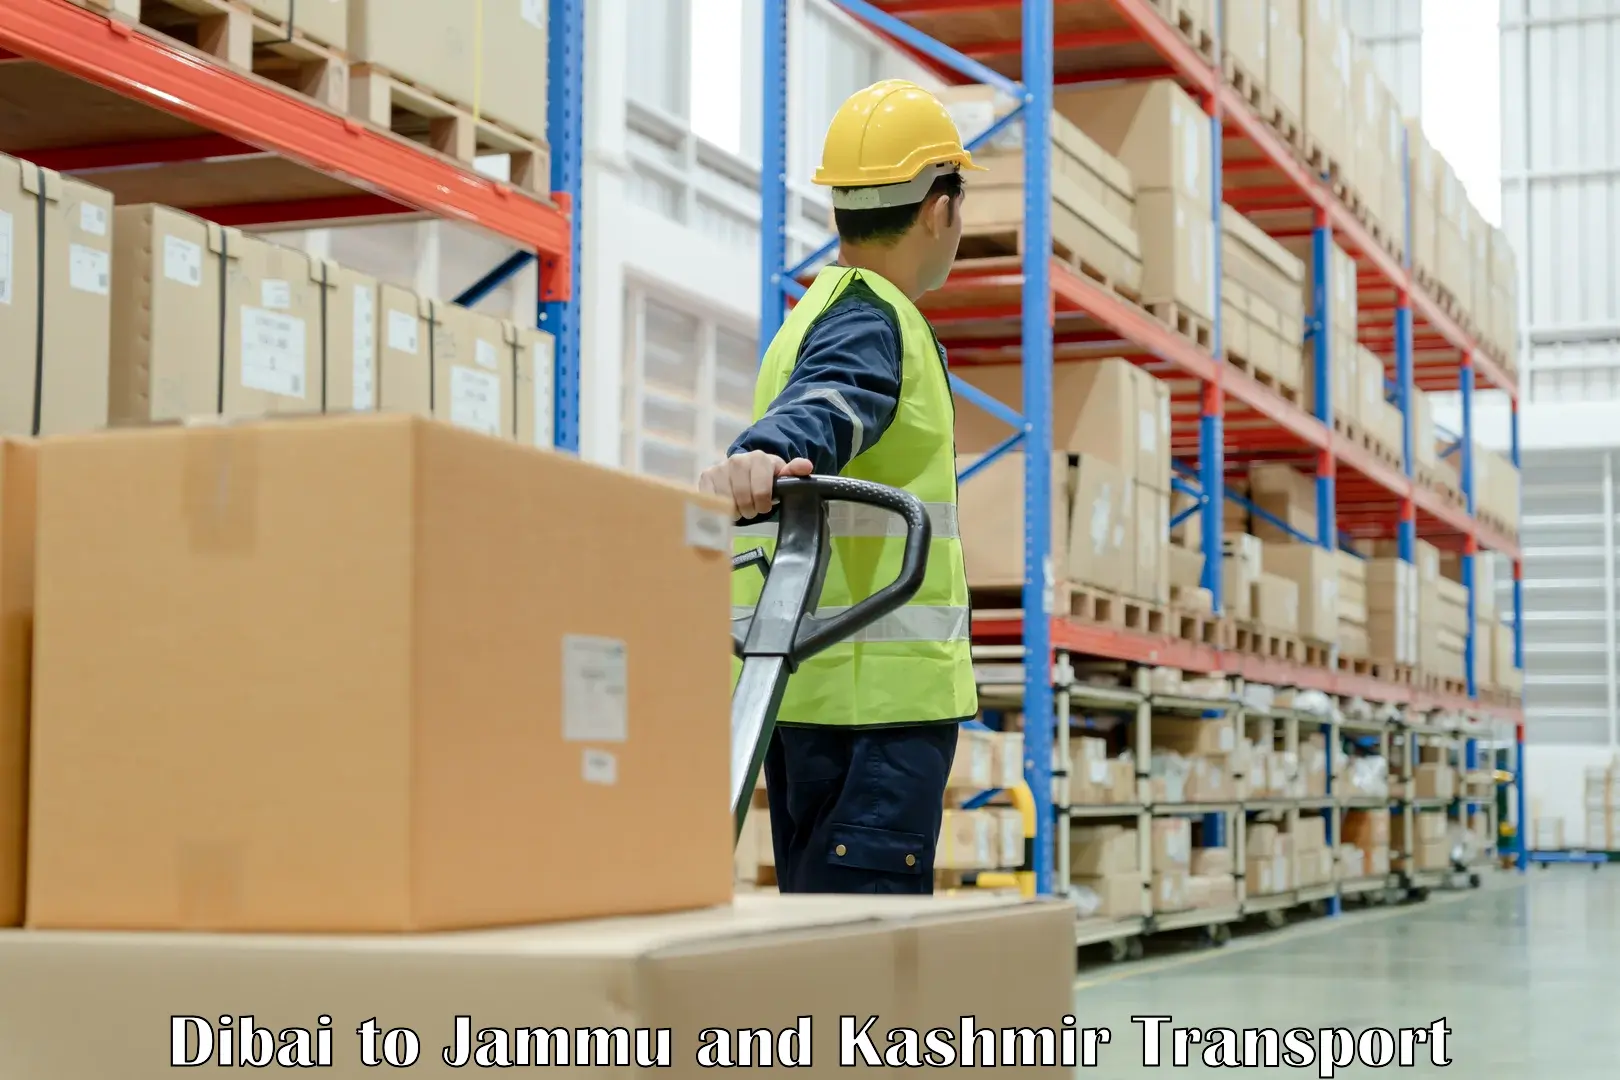 Container transport service Dibai to Jammu and Kashmir